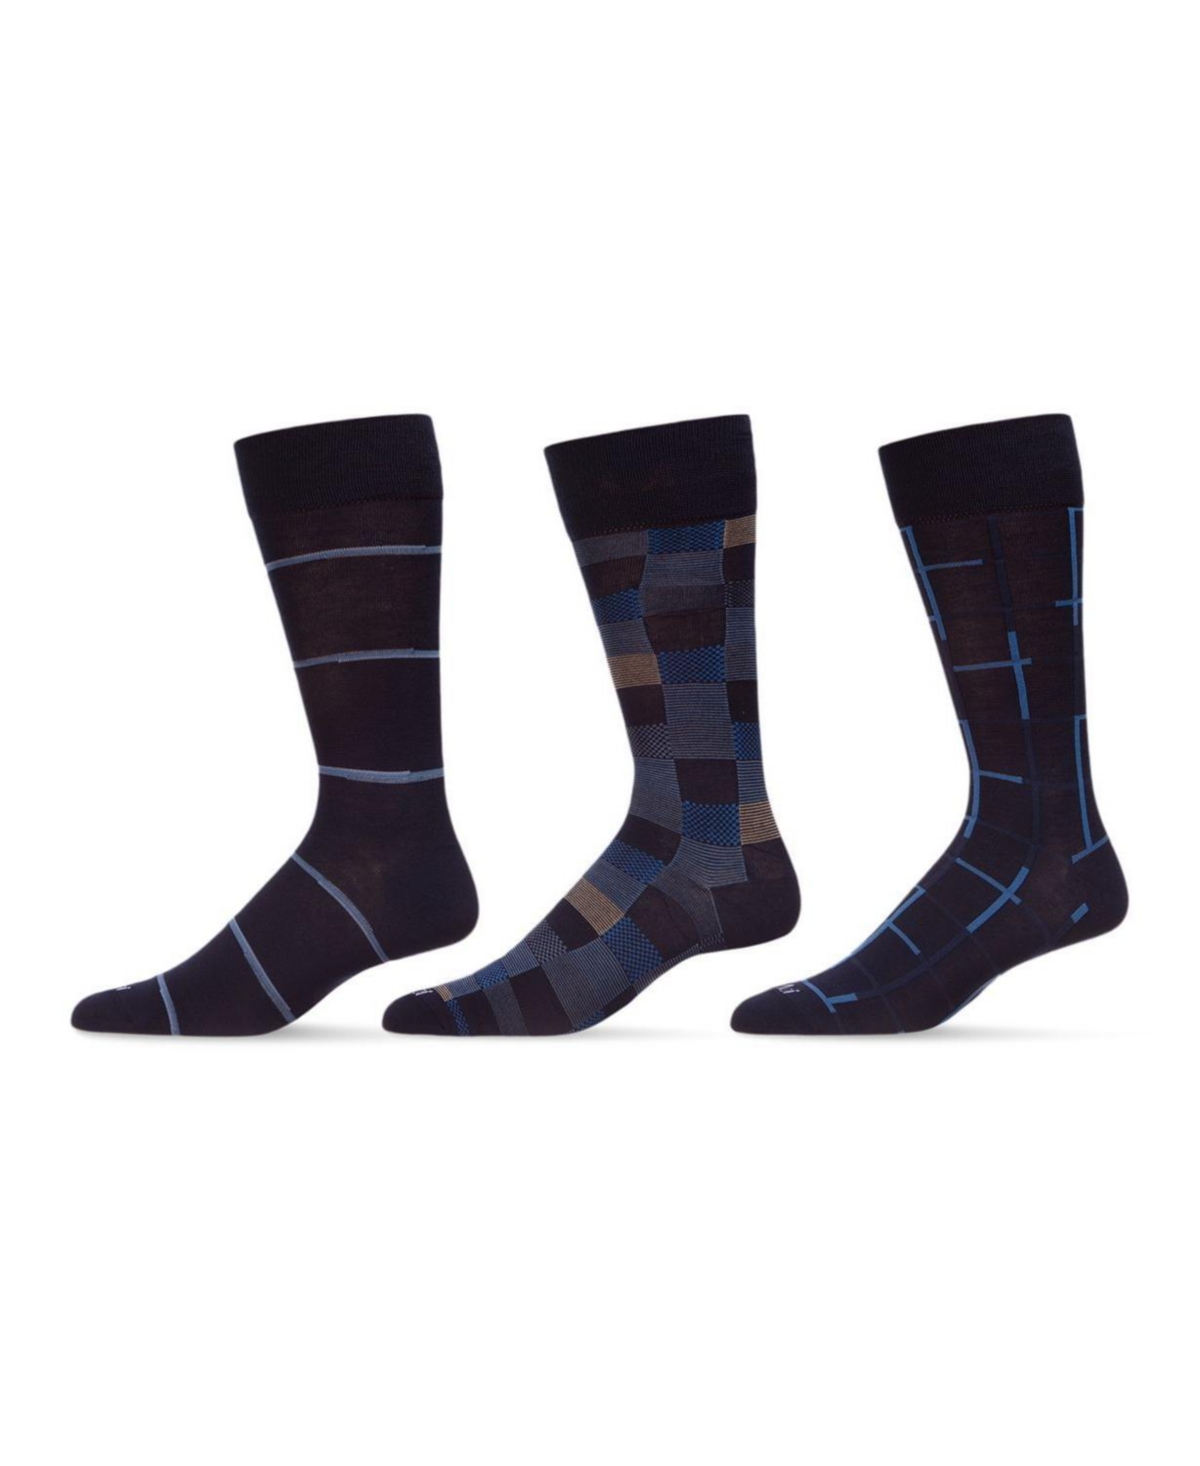 Men's Basic Assortment Socks, Pack of 3 - Navy